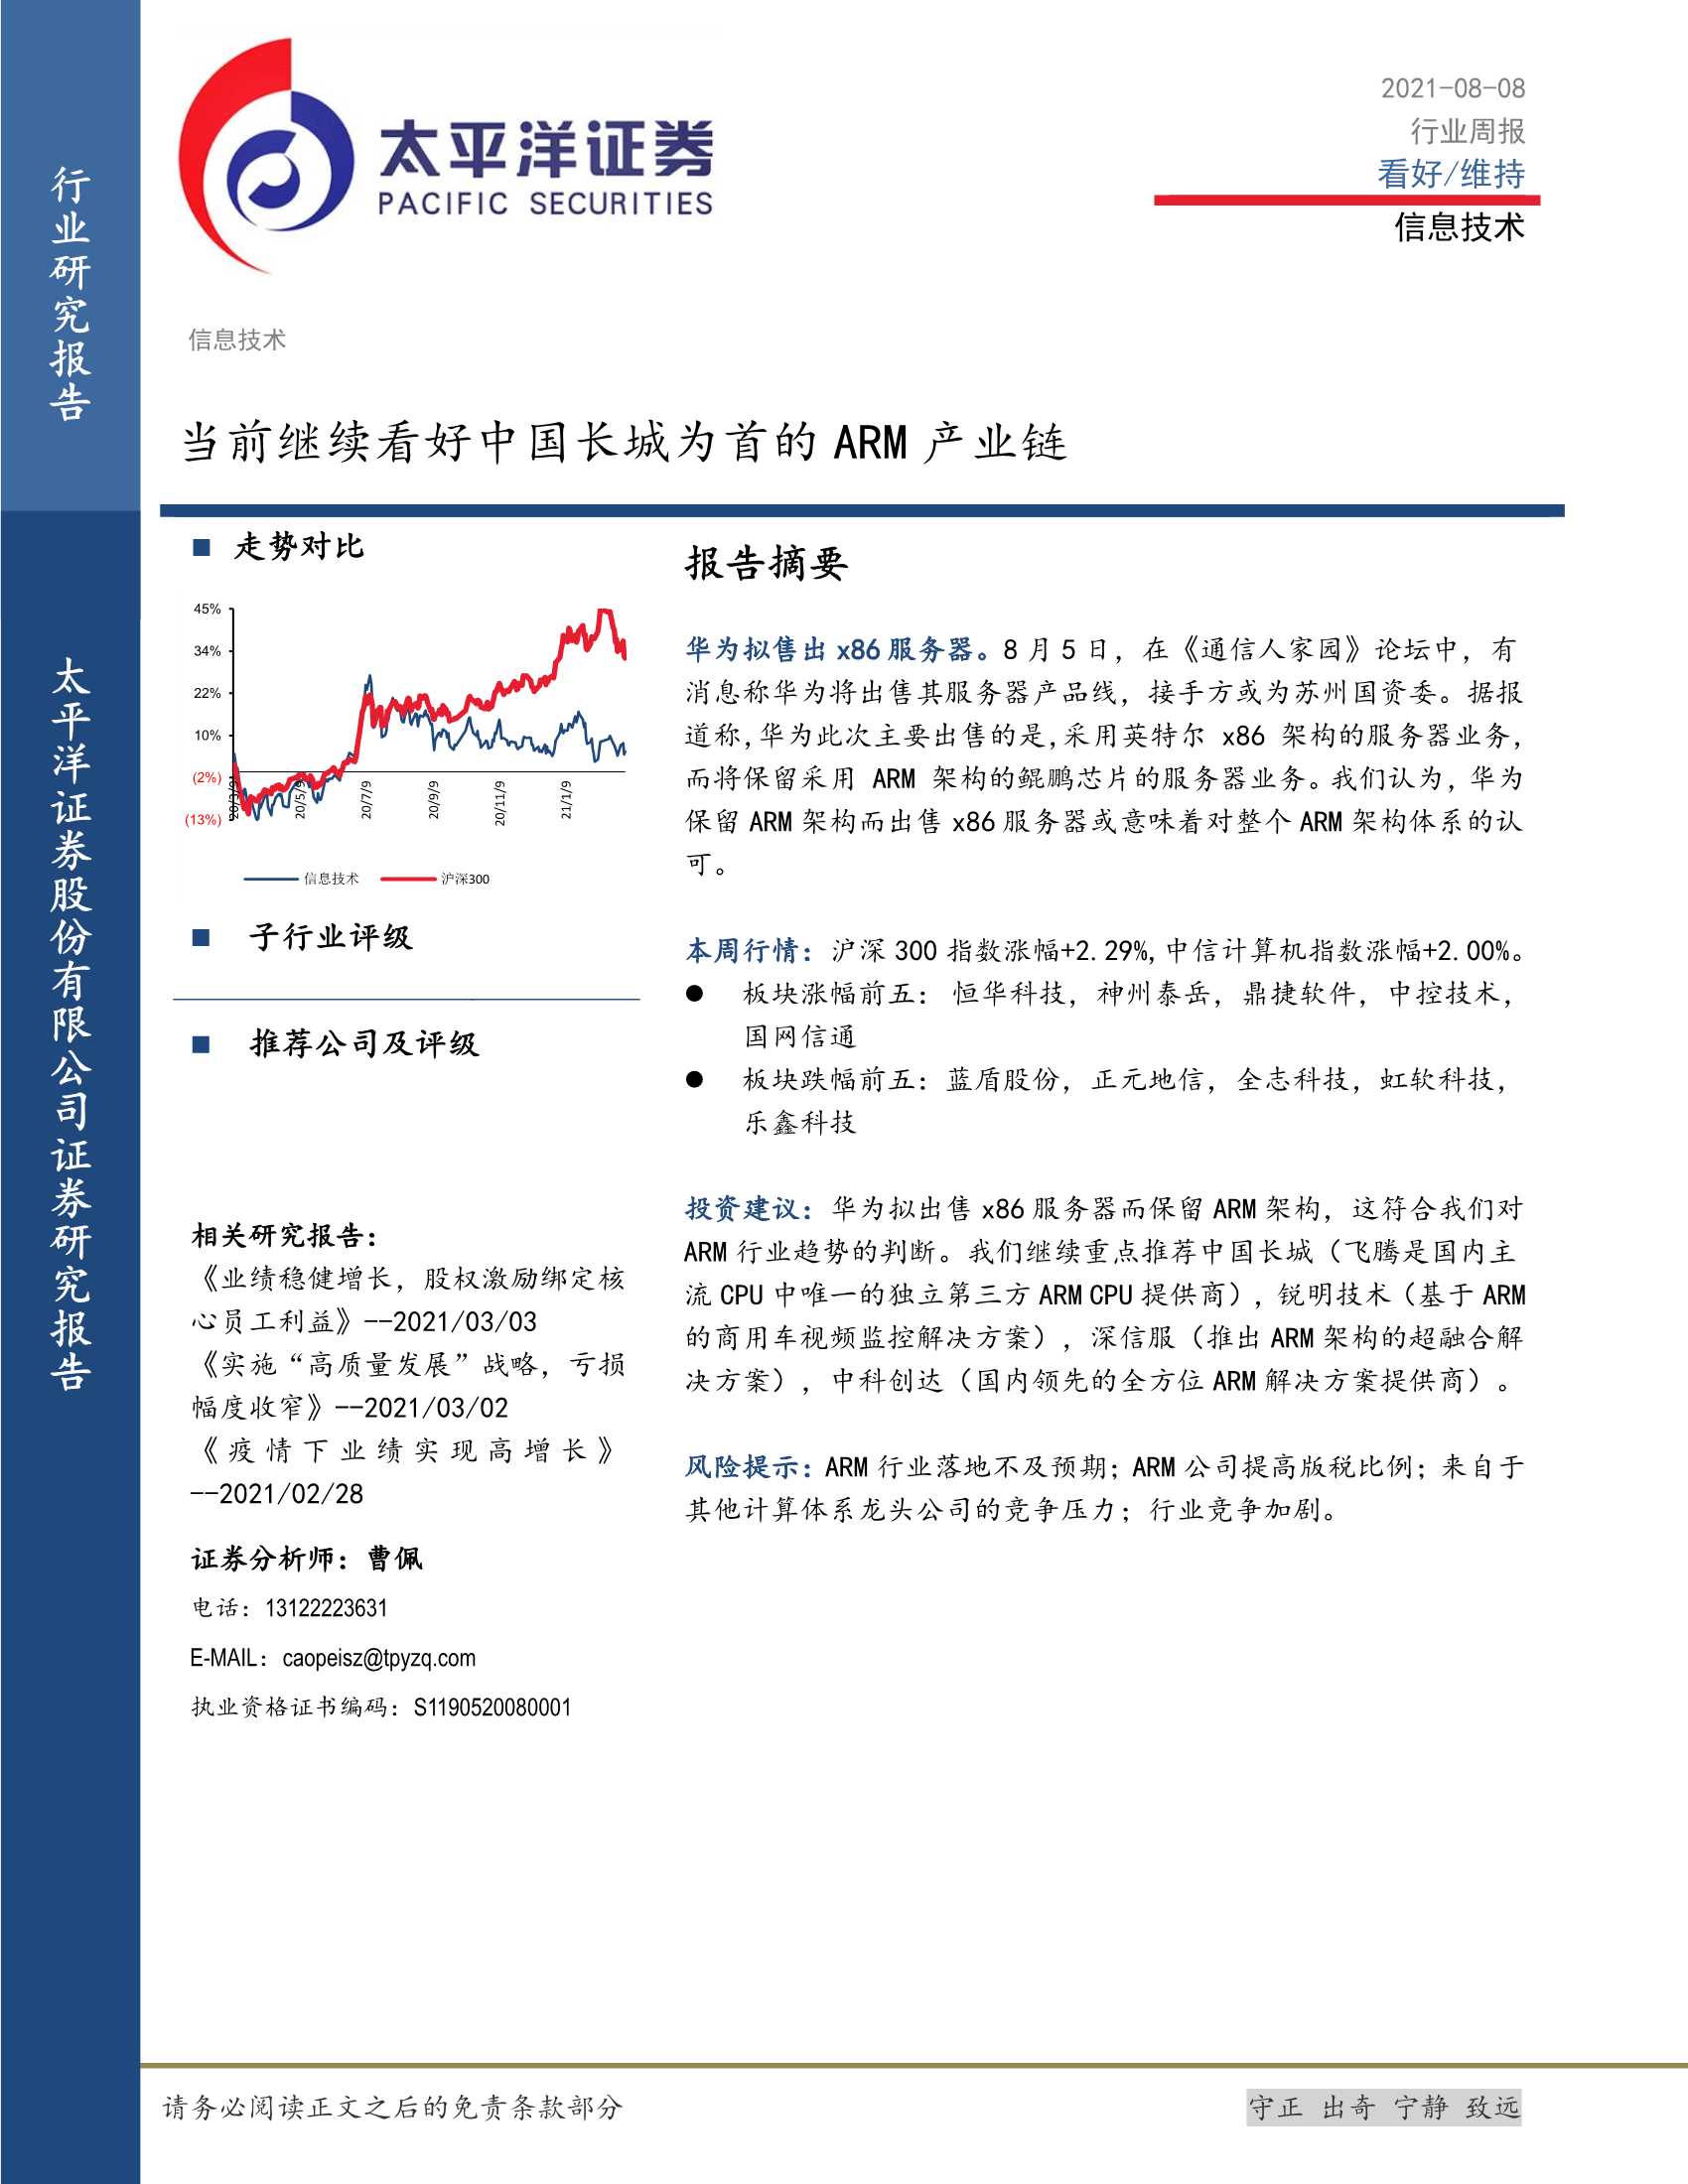 太平洋证券-信息技术行业周报：当前继续看好中国长城为首的ARM产业链-20210808-29页